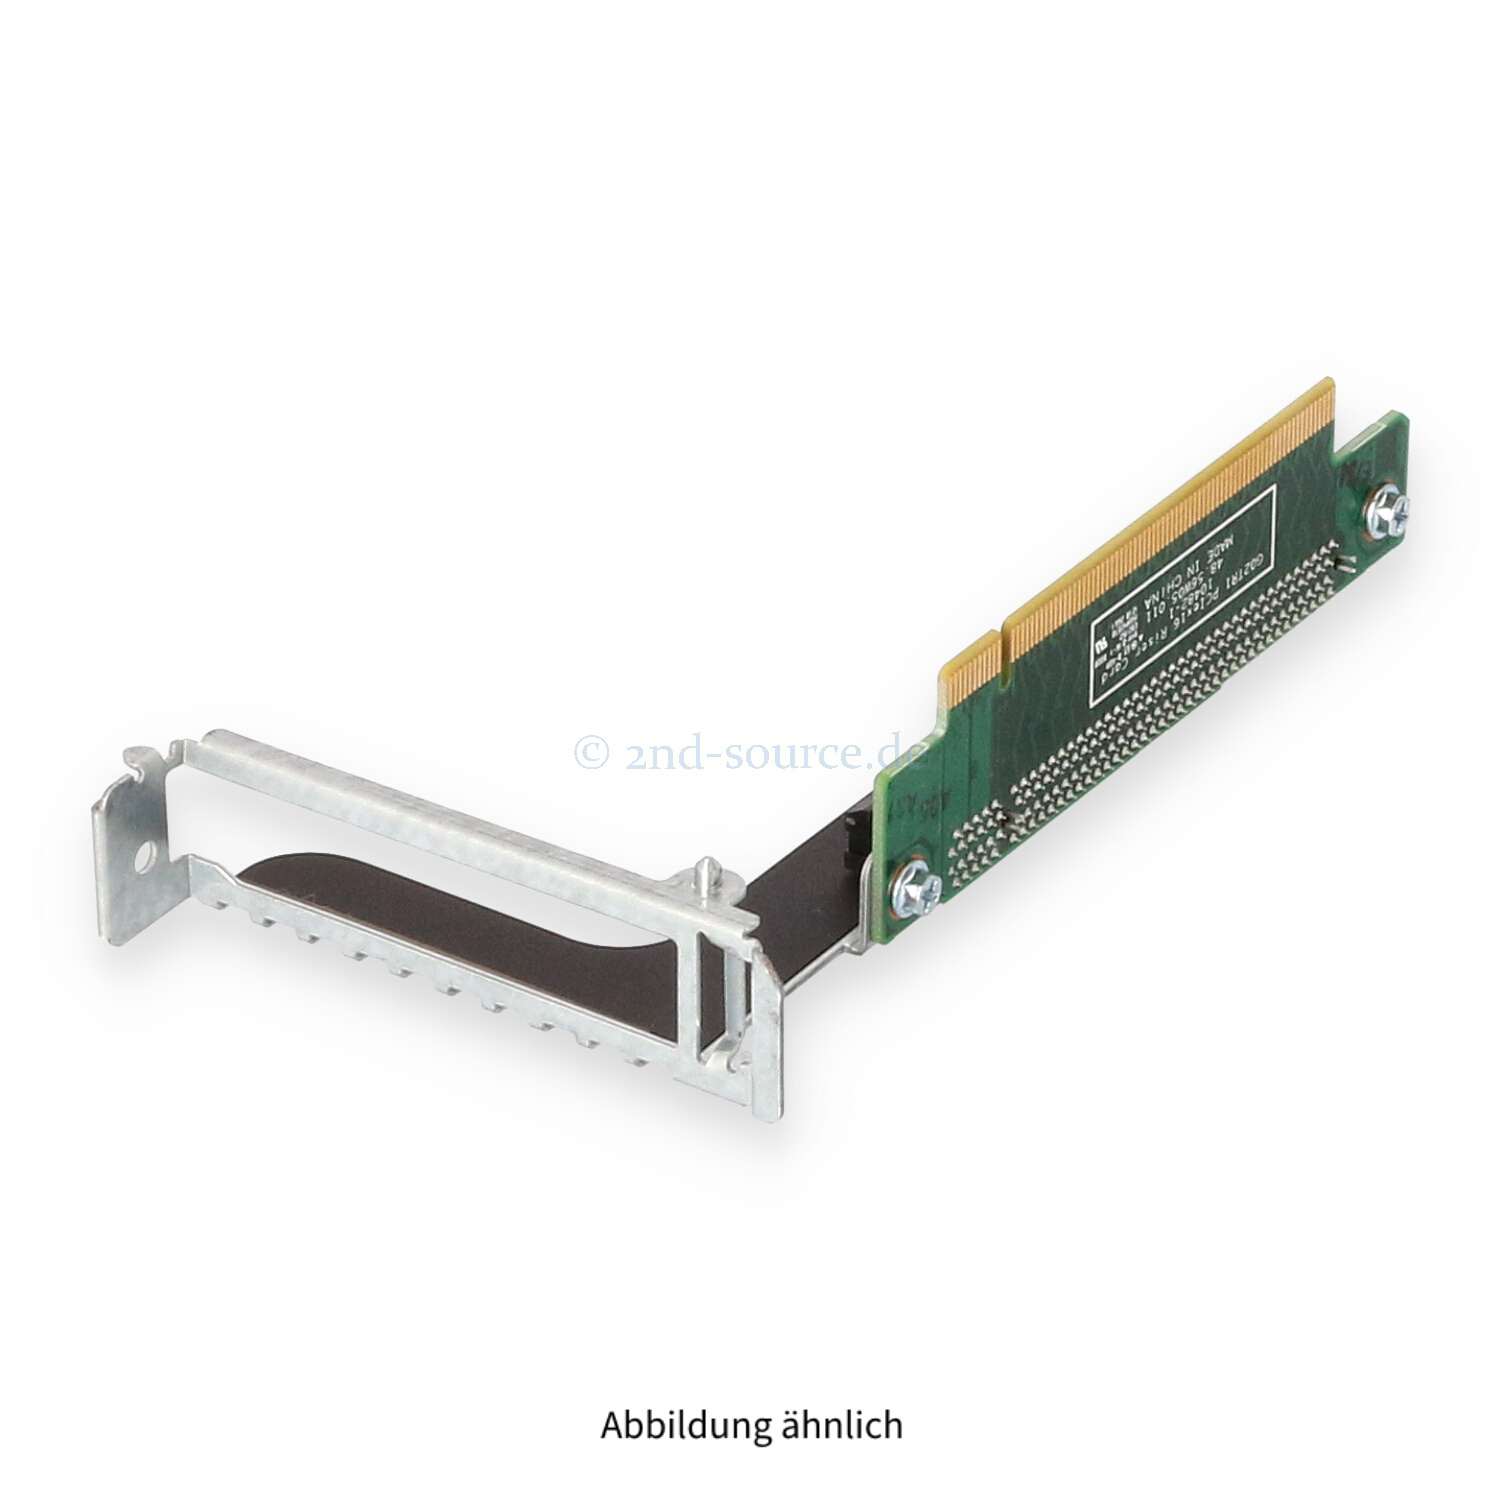 Fujitsu PCI Express x16 Riser Card RX200 S7 S8 A3C40137296